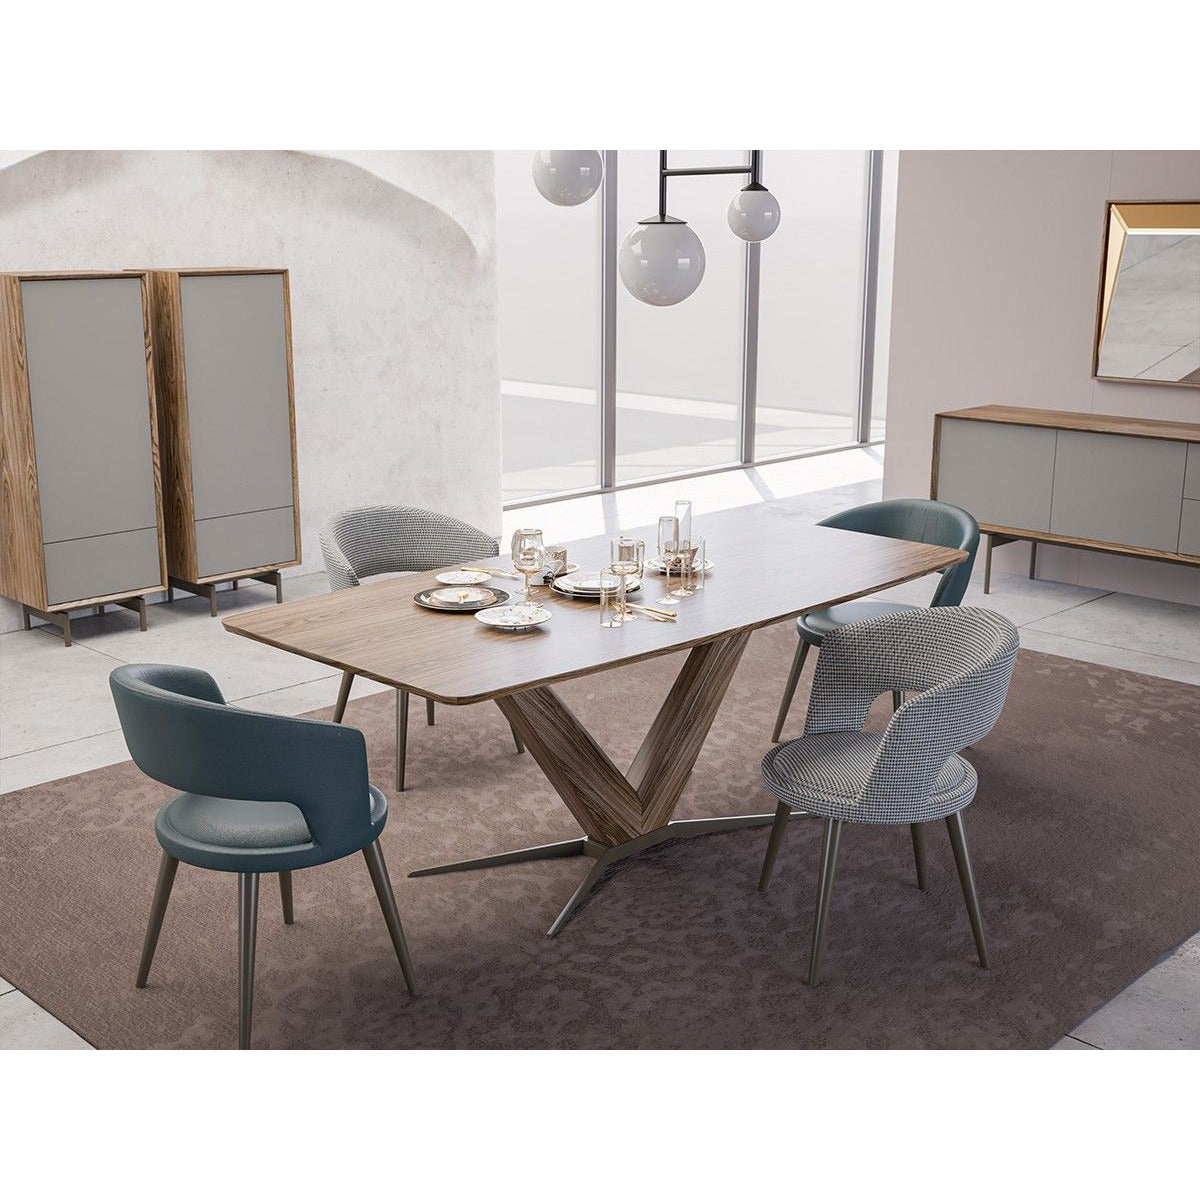 Recta Välnöt Matbord - LINE Furniture Group